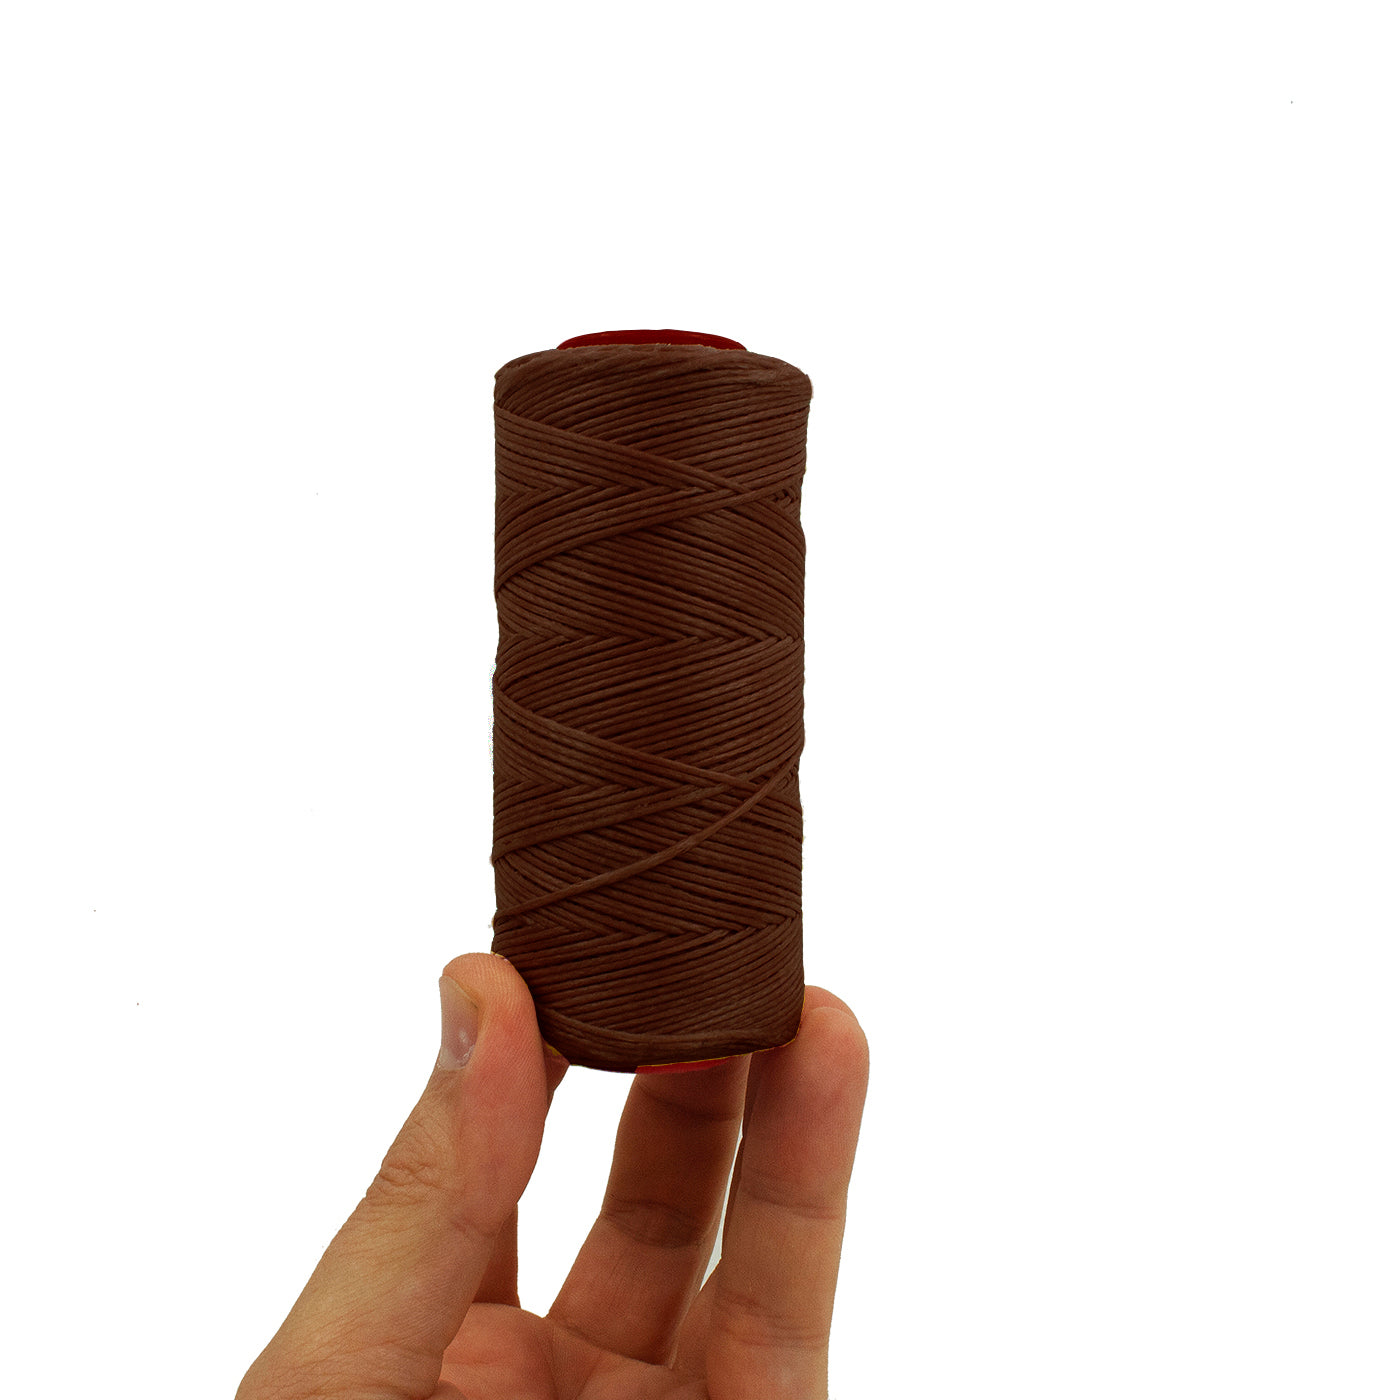 Flat waxed thread 1.0 mm 300 meters